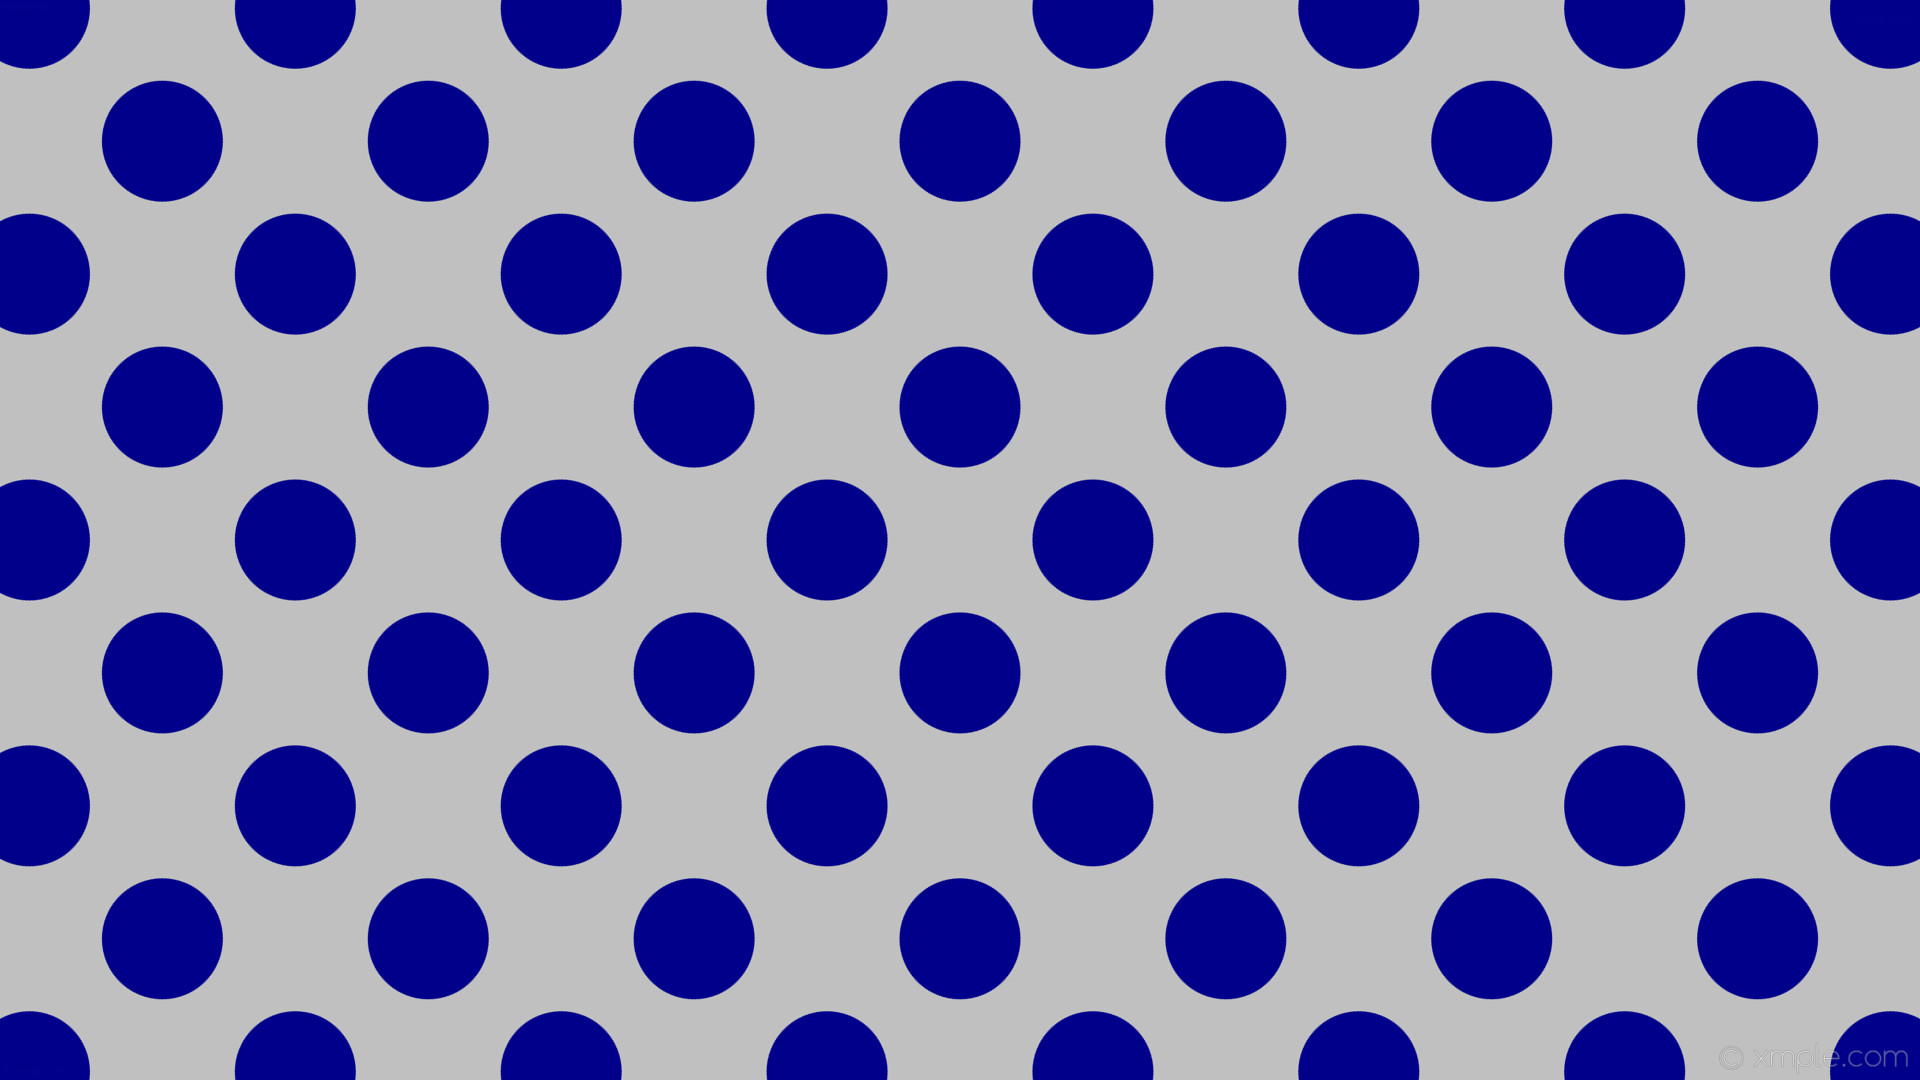 1920x1080 wallpaper polka dots spots blue grey silver dark blue #c0c0c0 #00008b 45Â°  121px